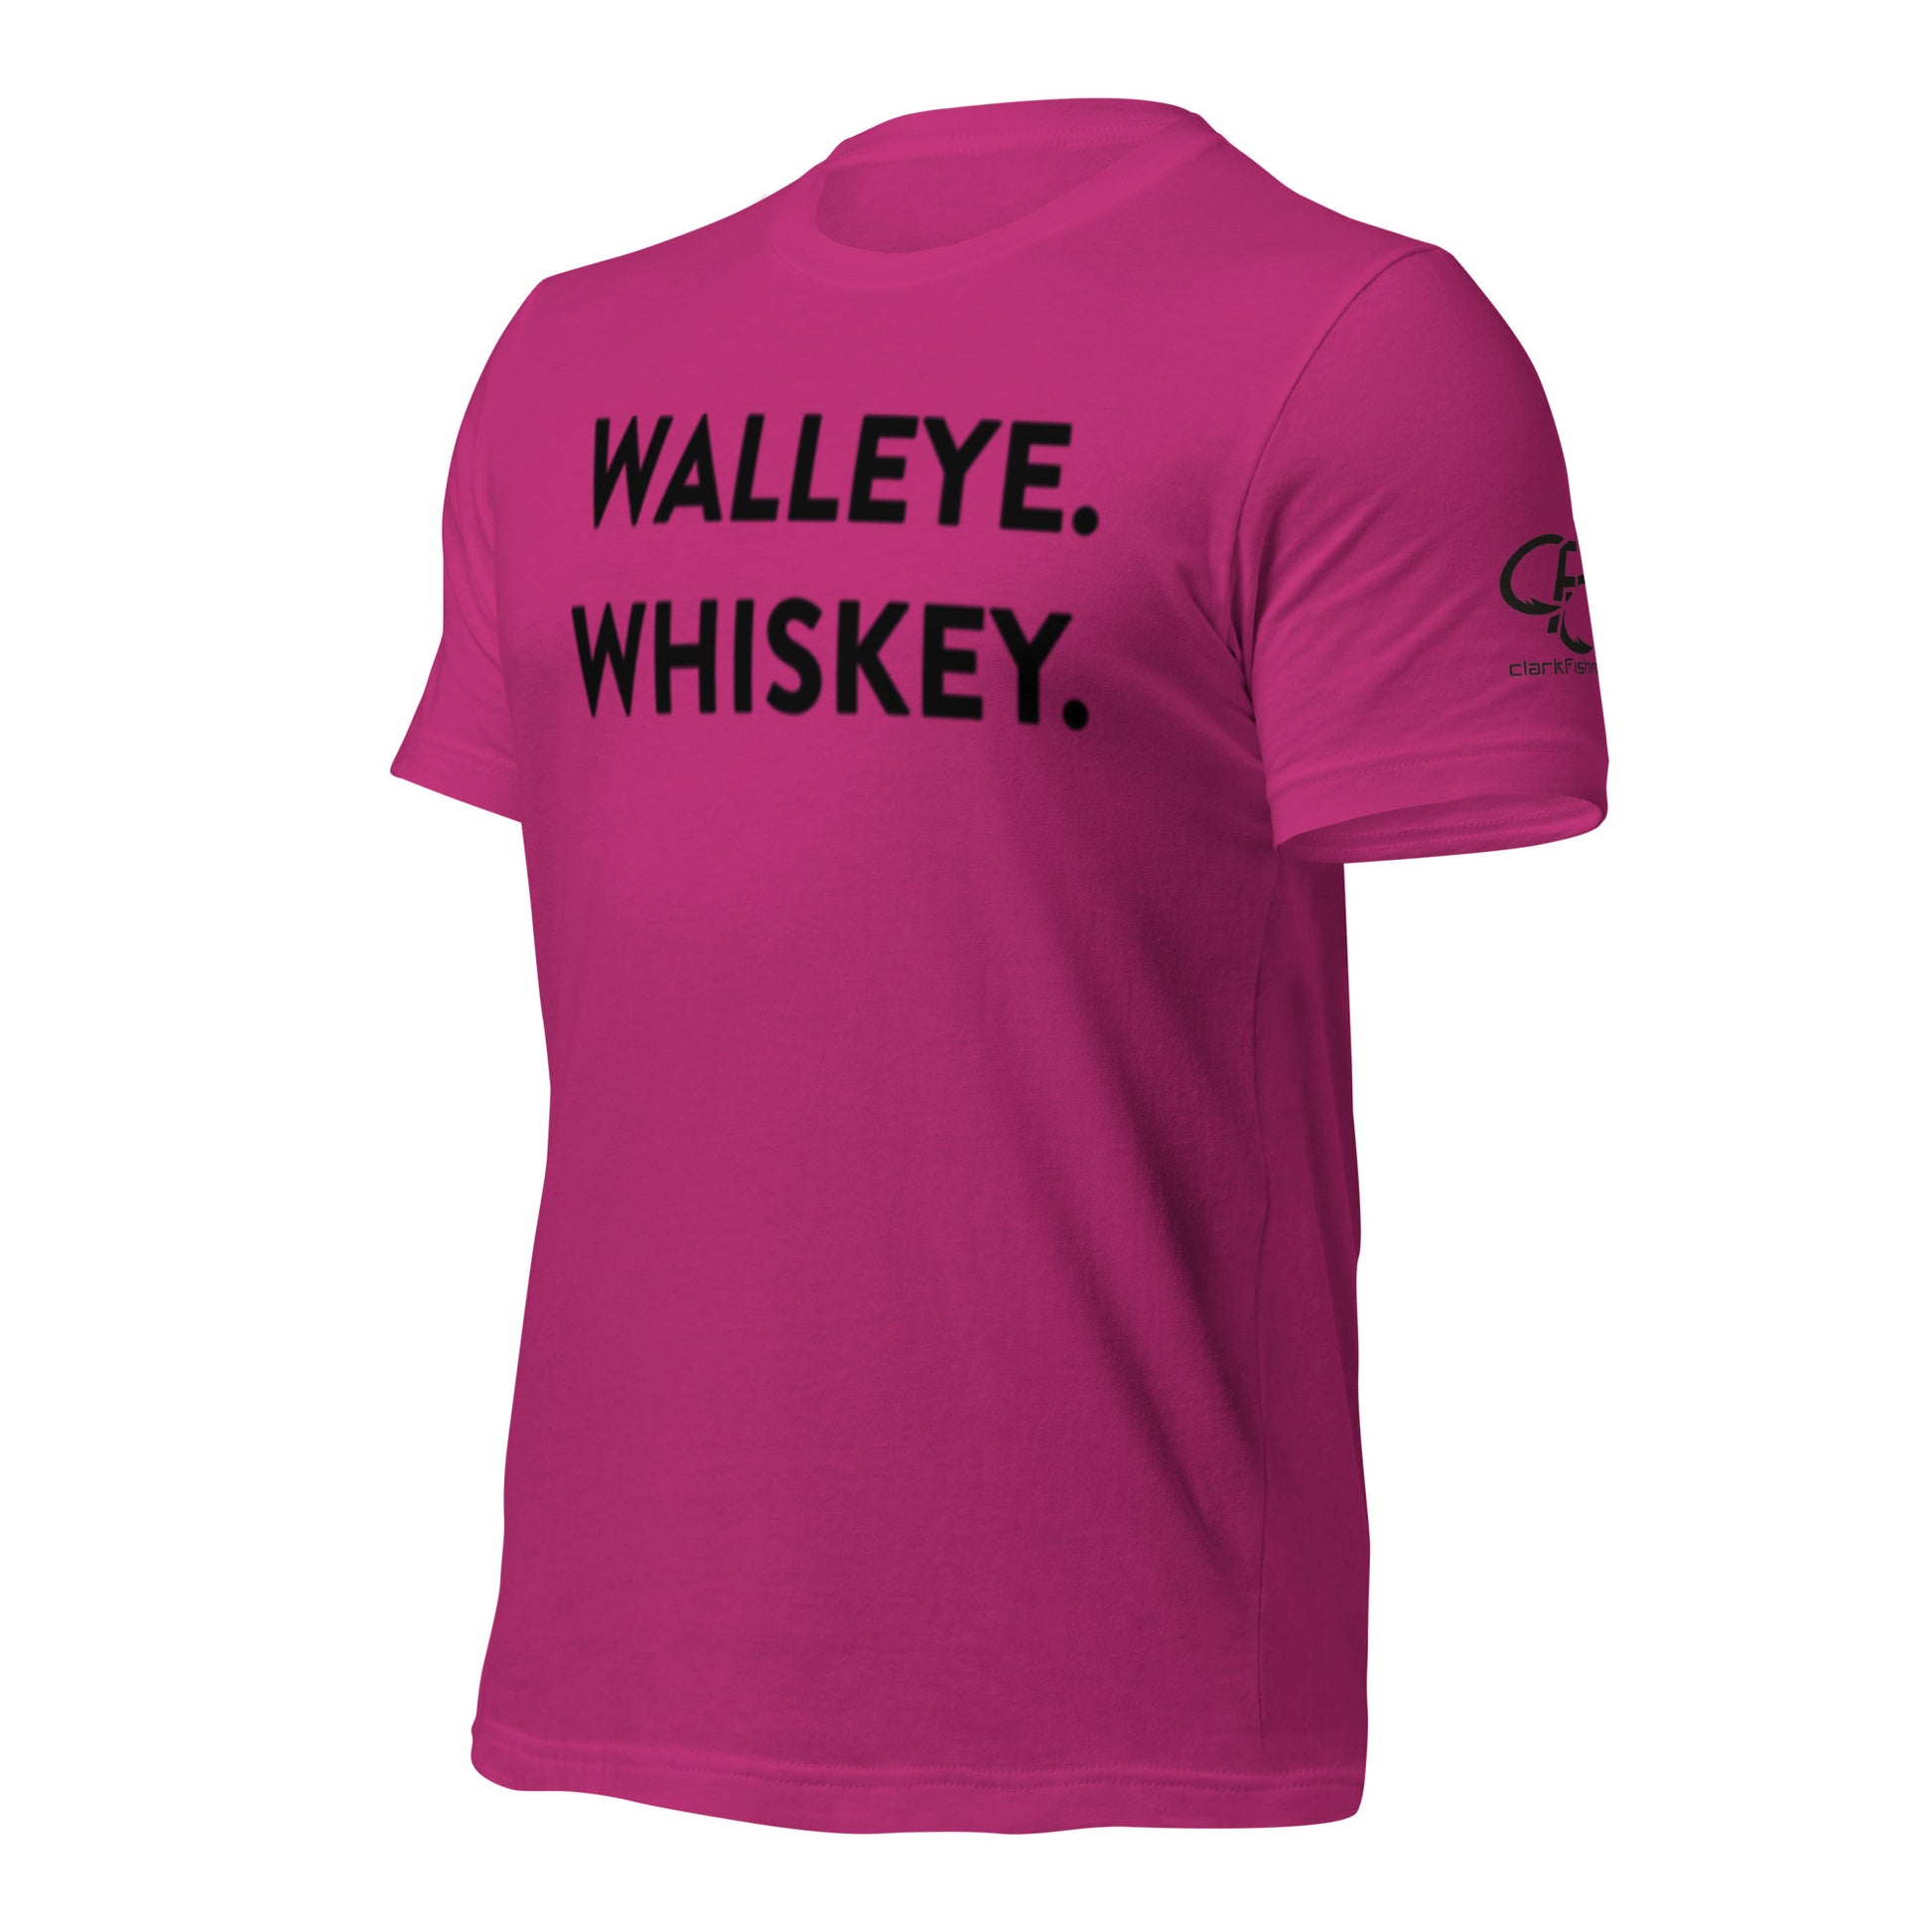 Girl Loves Walleye Fishing Shirt' Women's T-Shirt